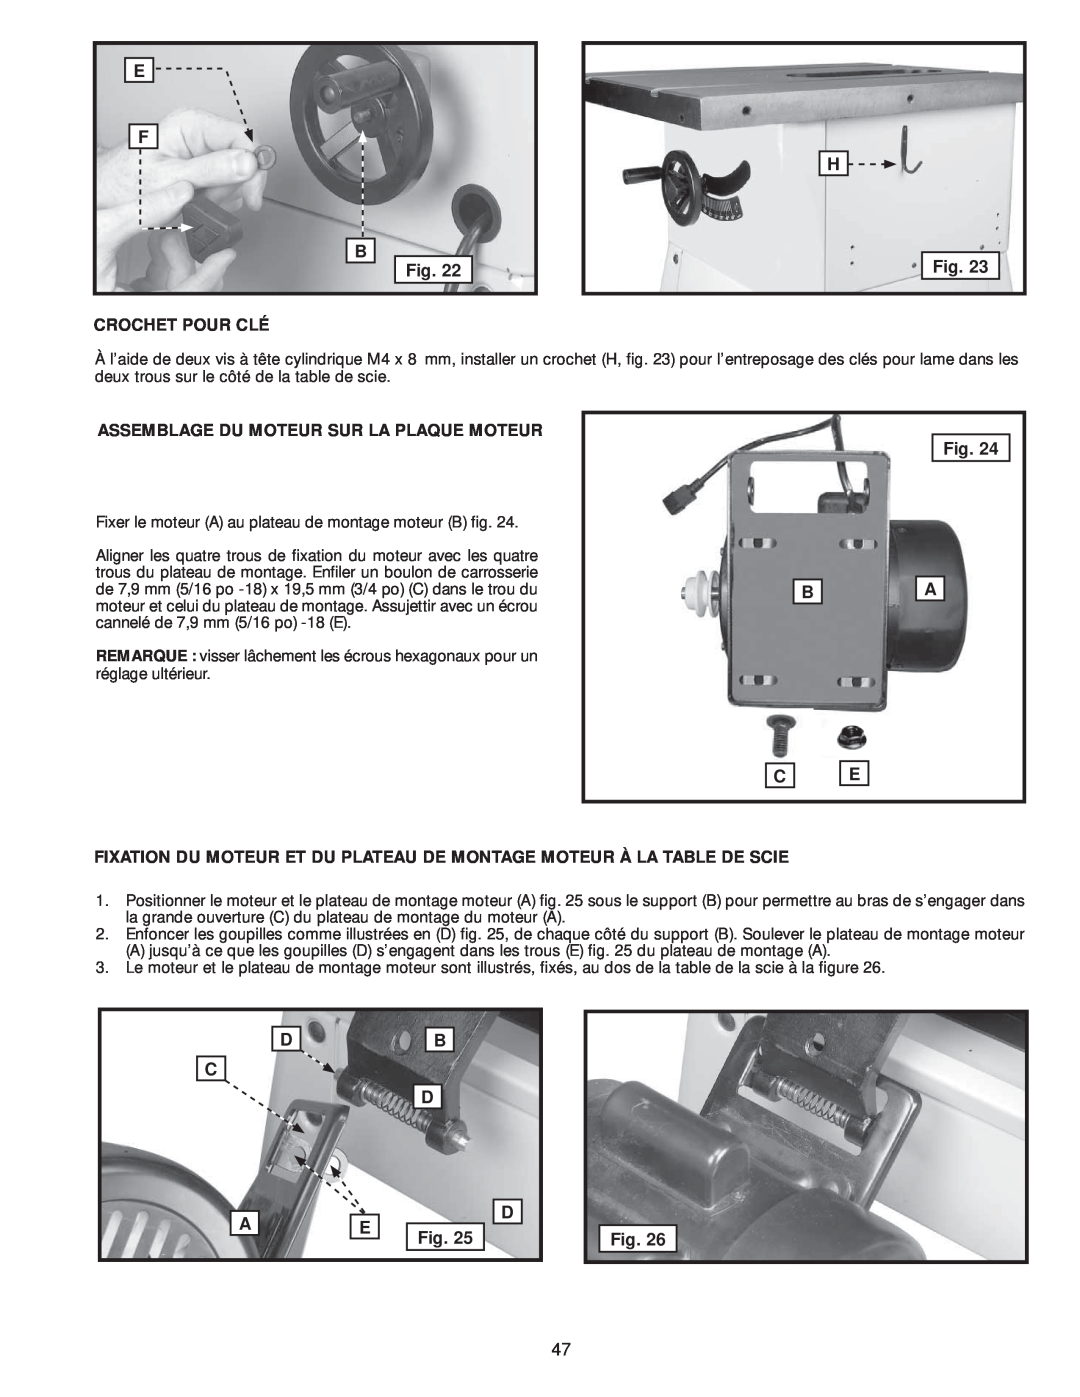 Delta 36-978, 36-979 instruction manual Fixer le moteur A au plateau de montage moteur B fig 